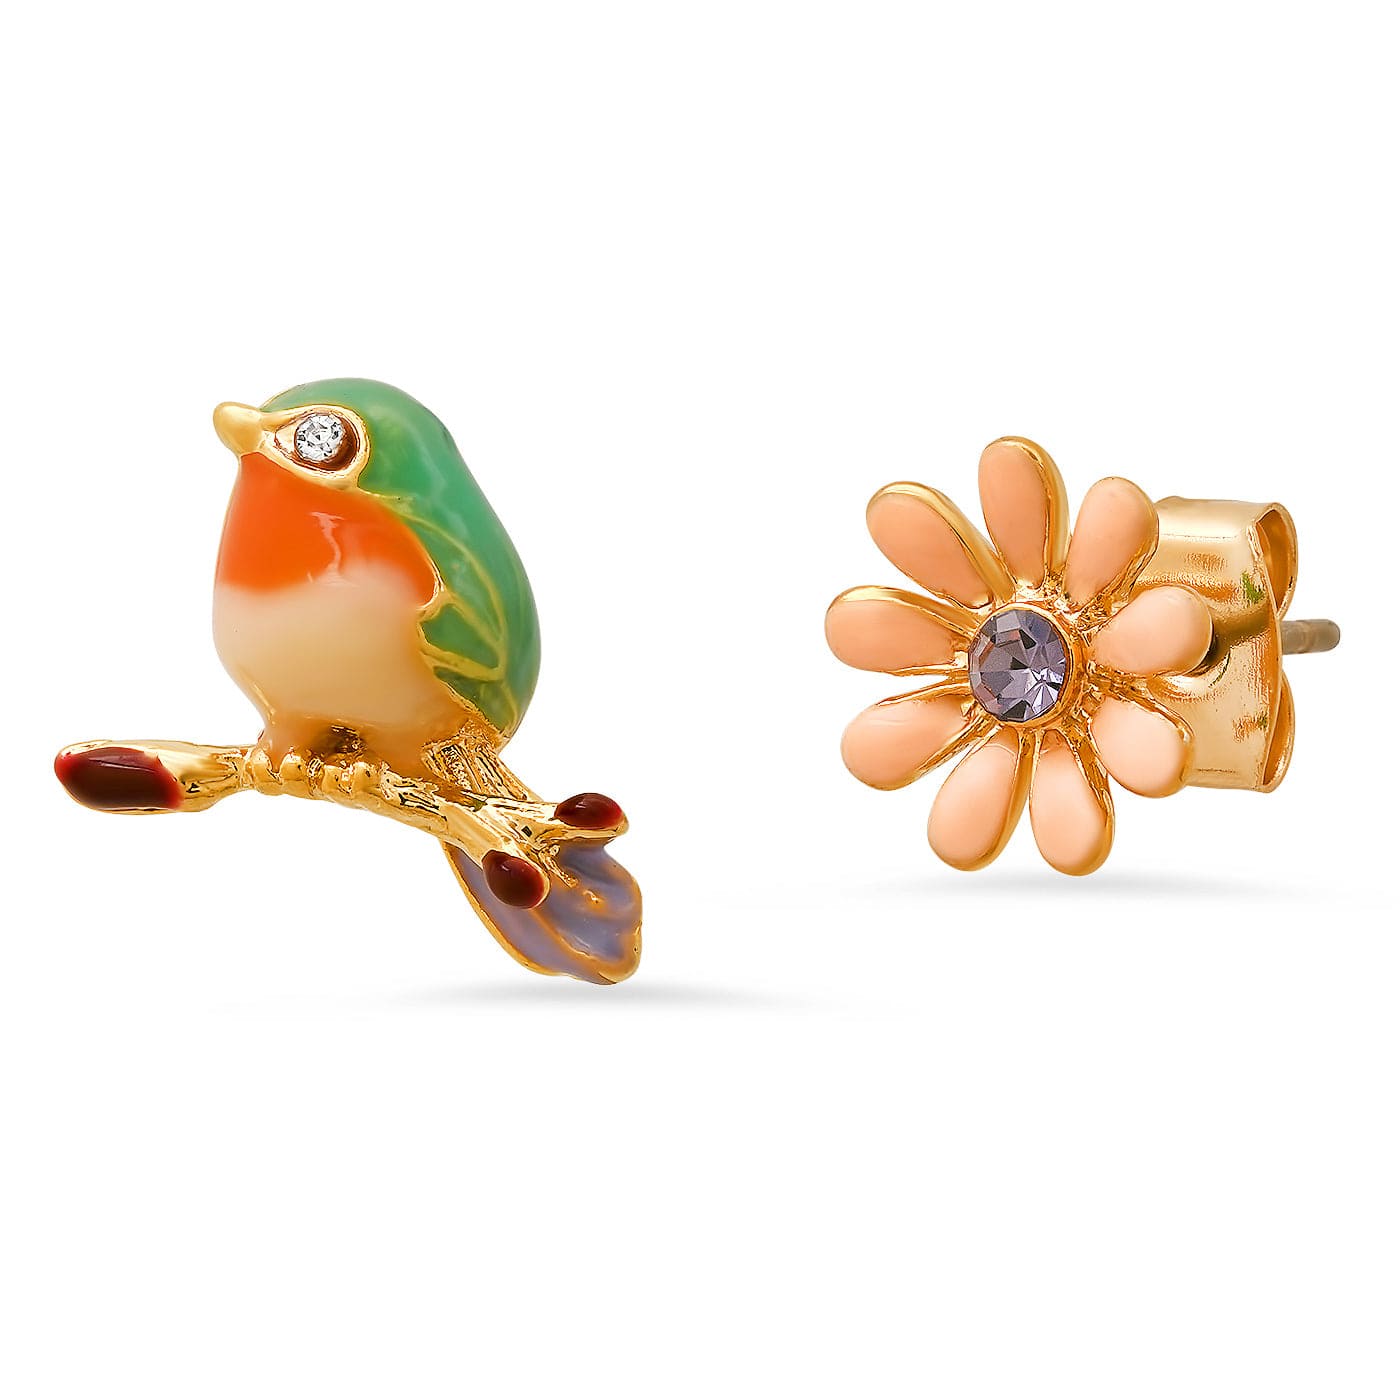 TAI JEWELRY Earrings Enamel Bird and Flower Mismatch Studs